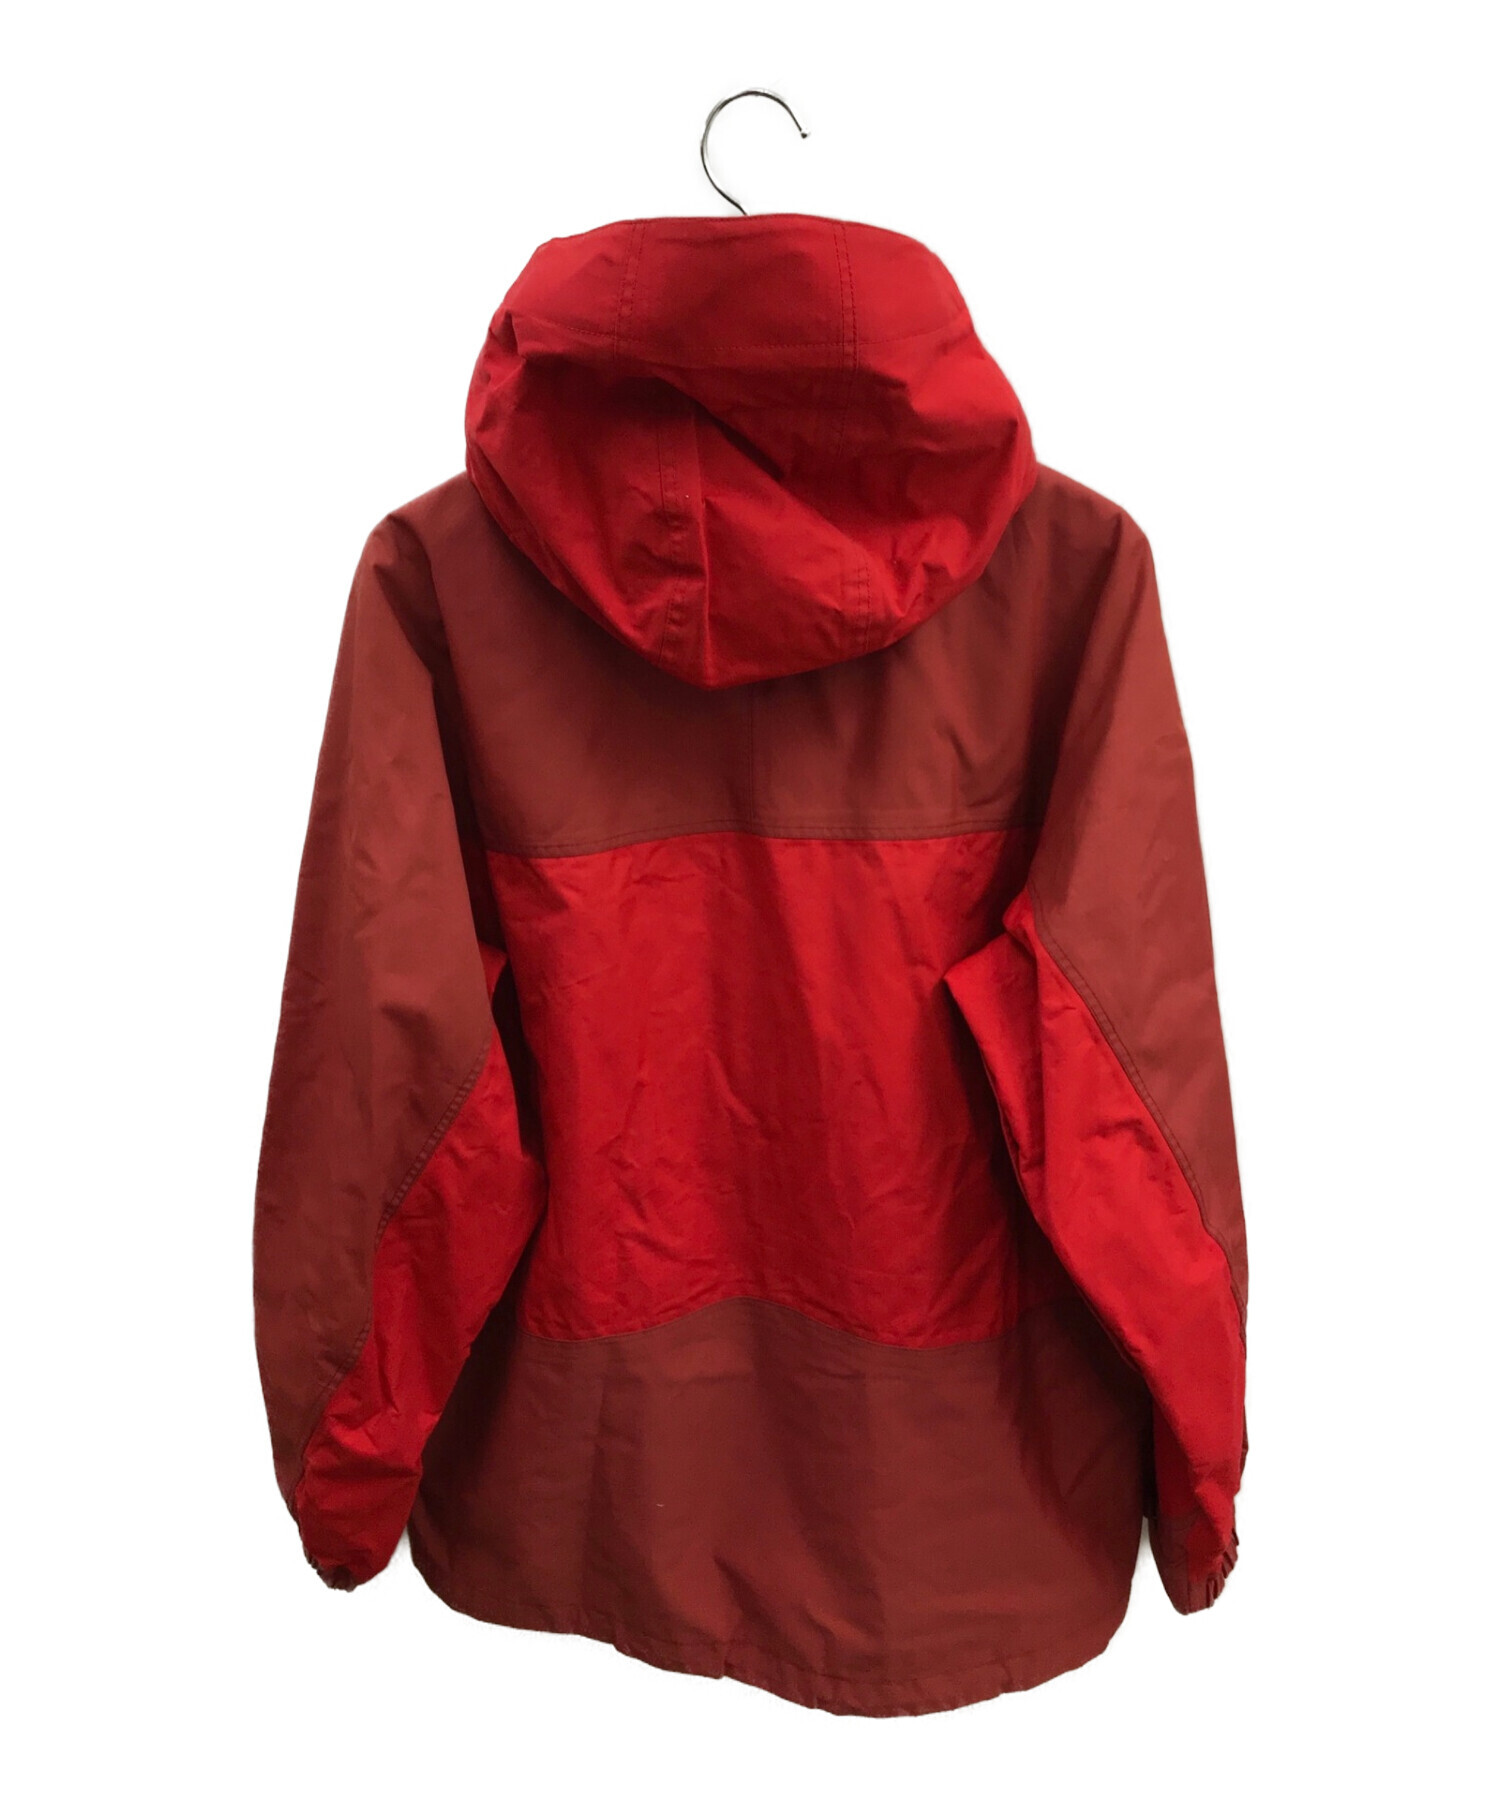 Patagonia (パタゴニア) ブラストジャケット レッド サイズ:M